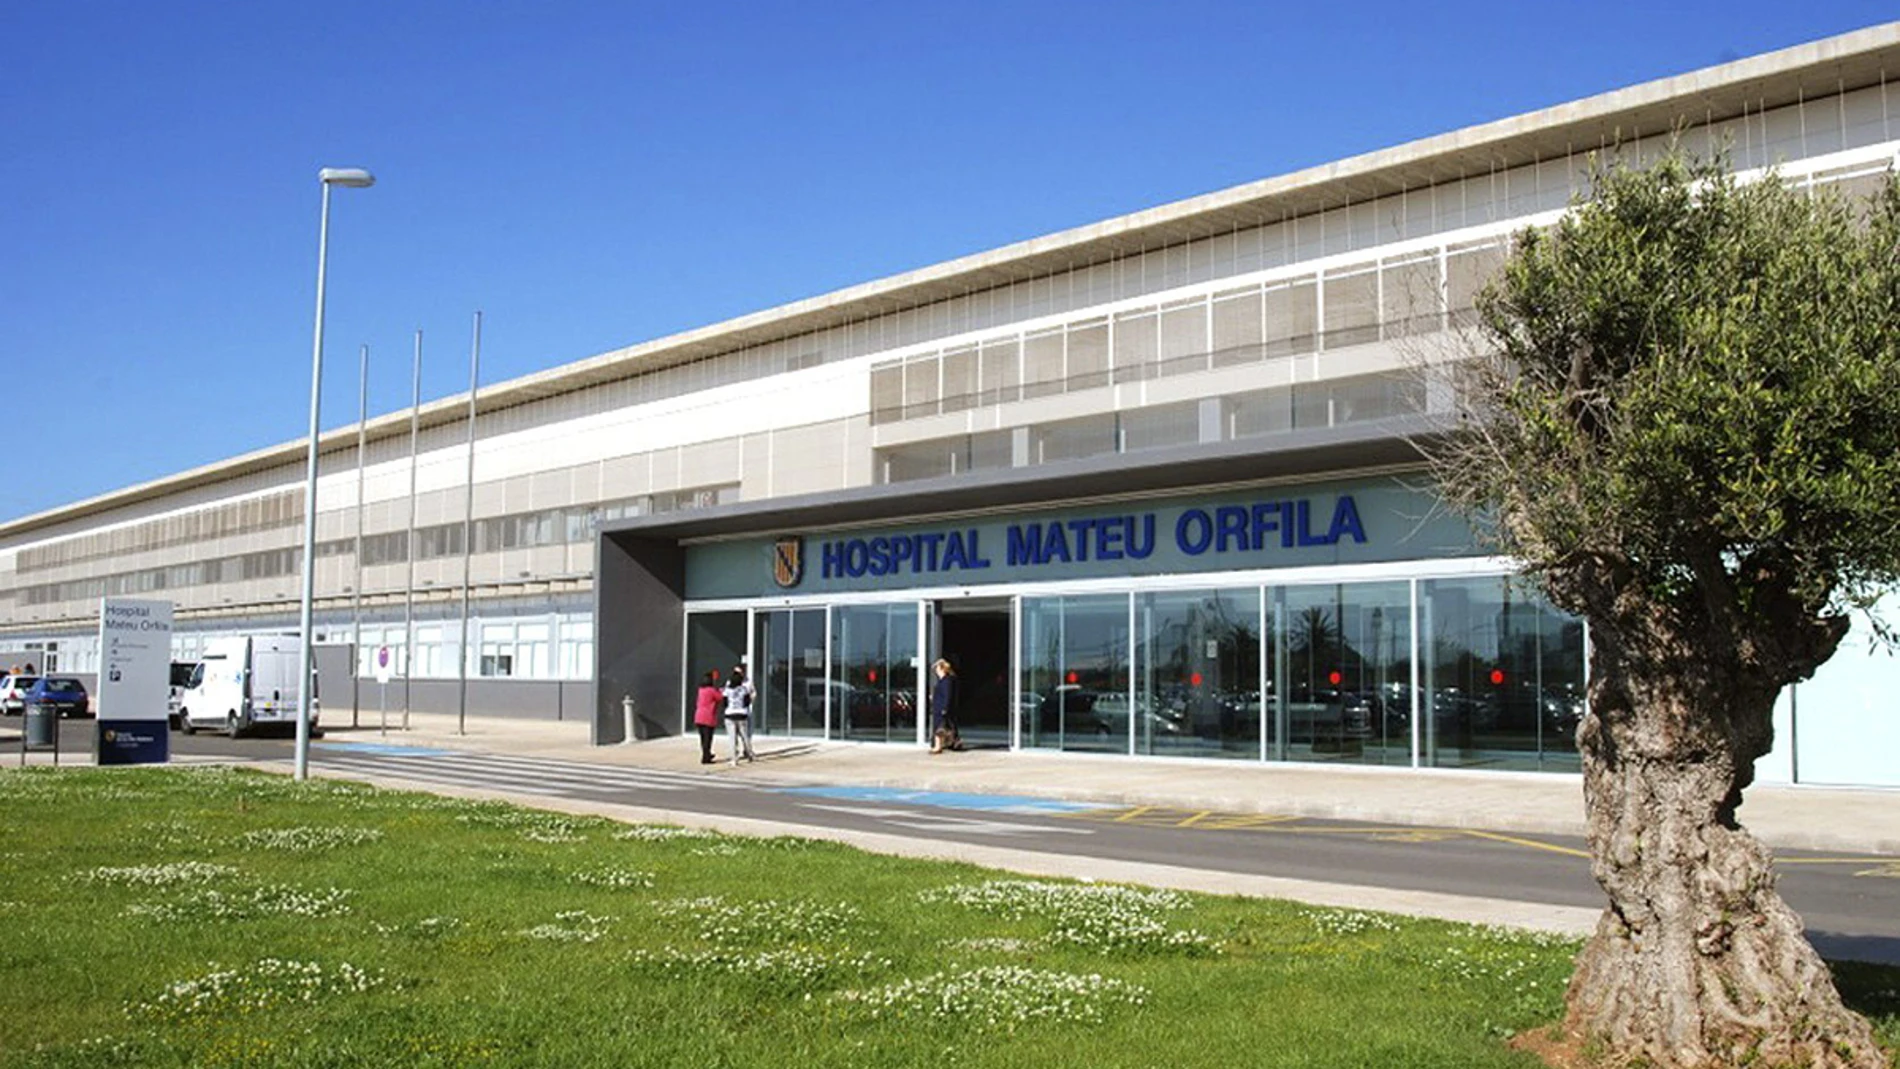 El hospital Mateu Orfila de Menorca 